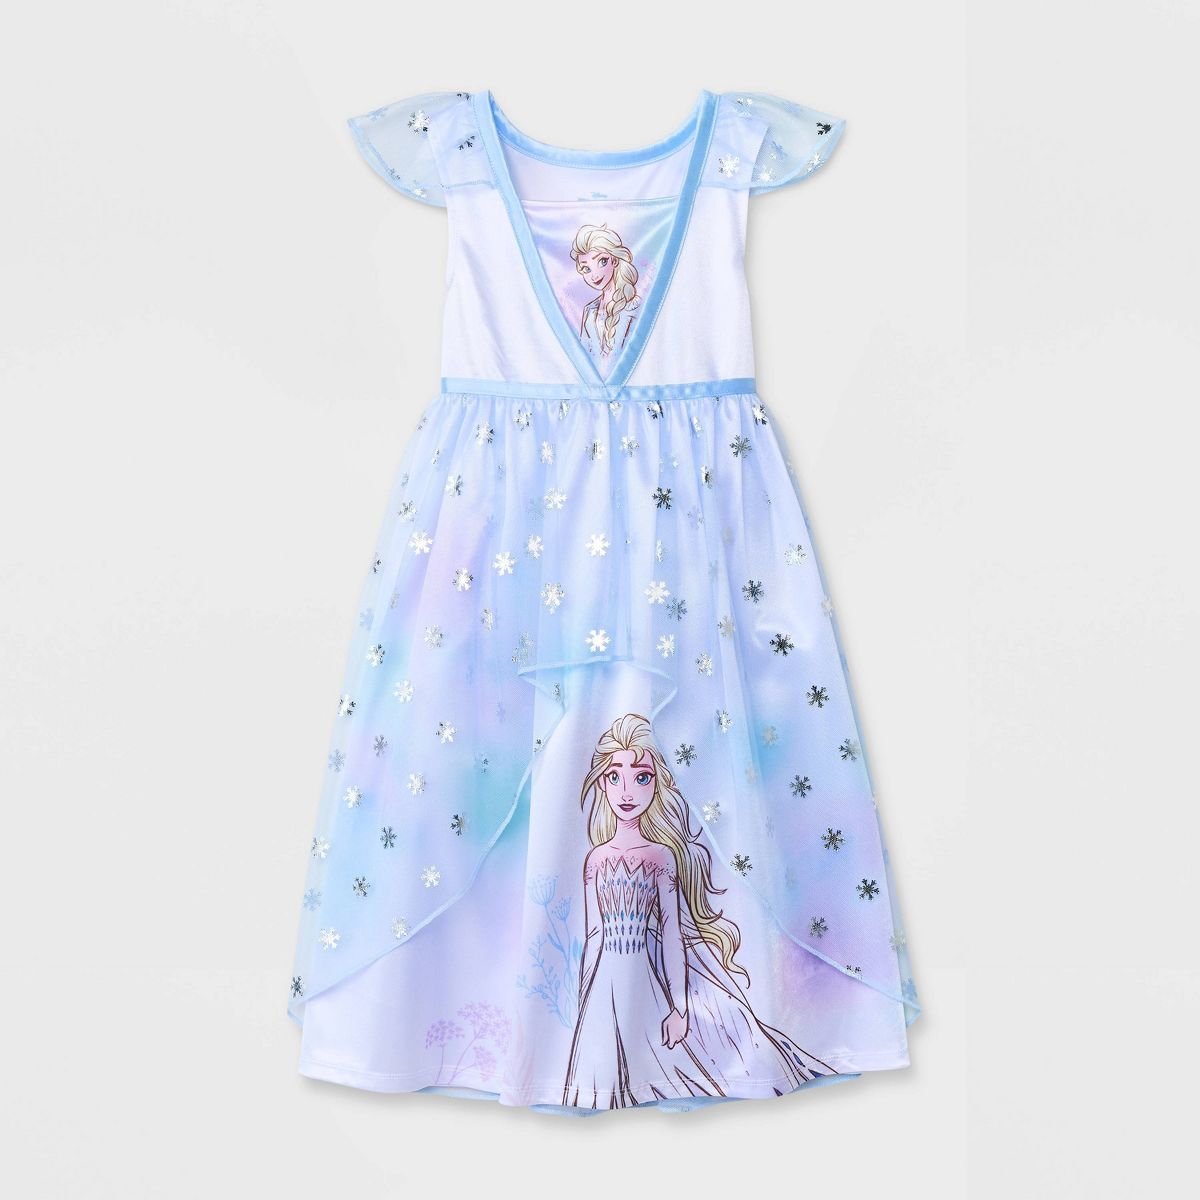 Toddler Girls' Frozen Elsa NightGown Pajama - Blue/White | Target